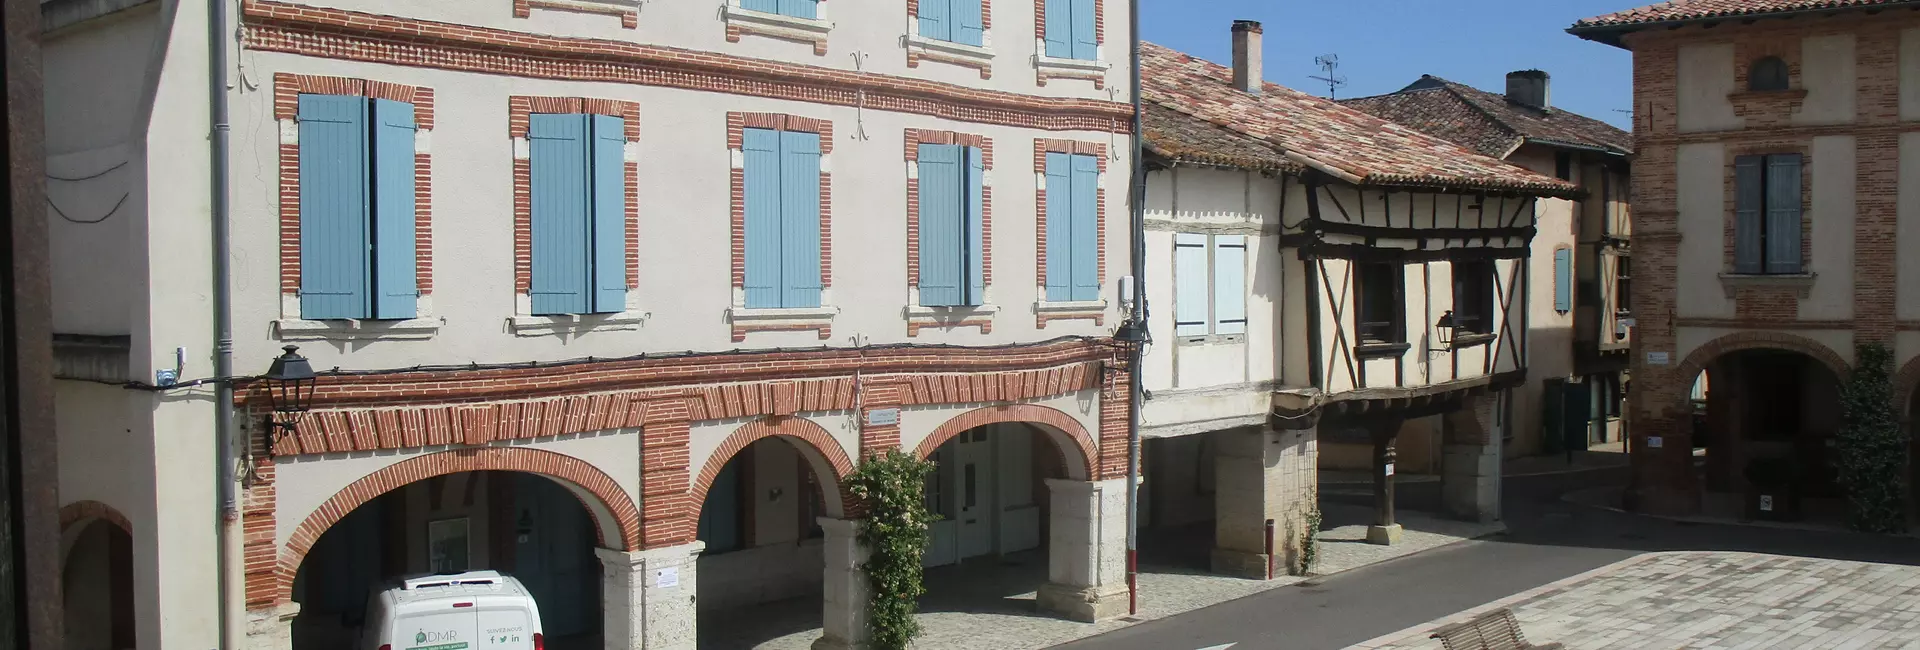 Les délibération du conseil municipale de Réalville (82) Tarn et Garonne